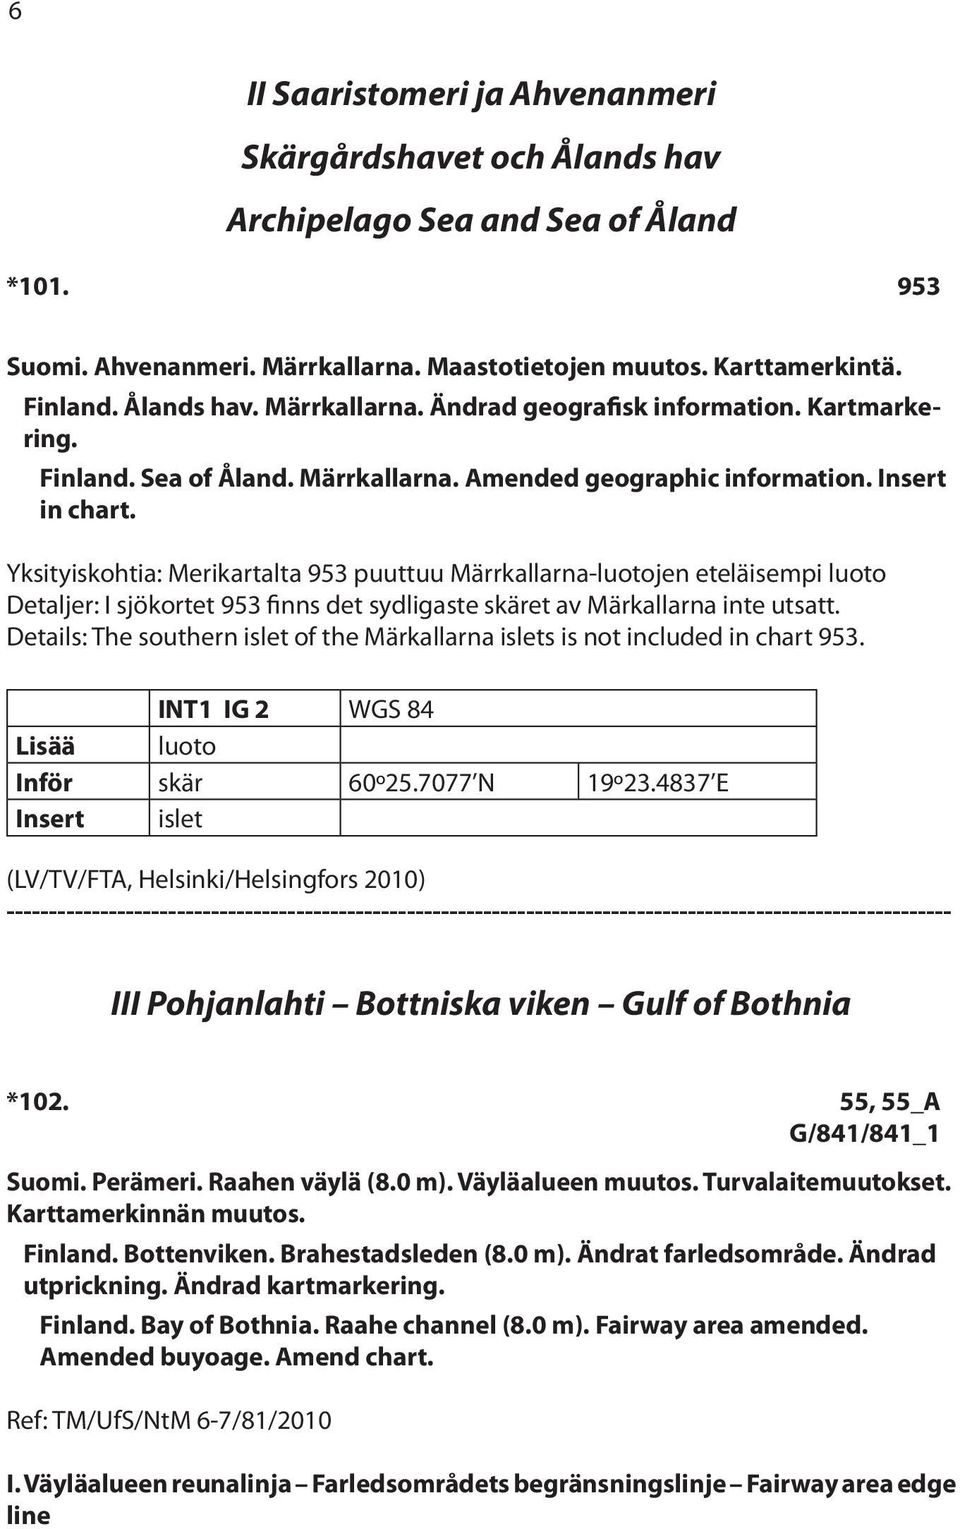 Yksityiskohtia: Merikartalta 953 puuttuu Märrkallarna-luotojen eteläisempi luoto Detaljer: I sjökortet 953 finns det sydligaste skäret av Märkallarna inte utsatt.